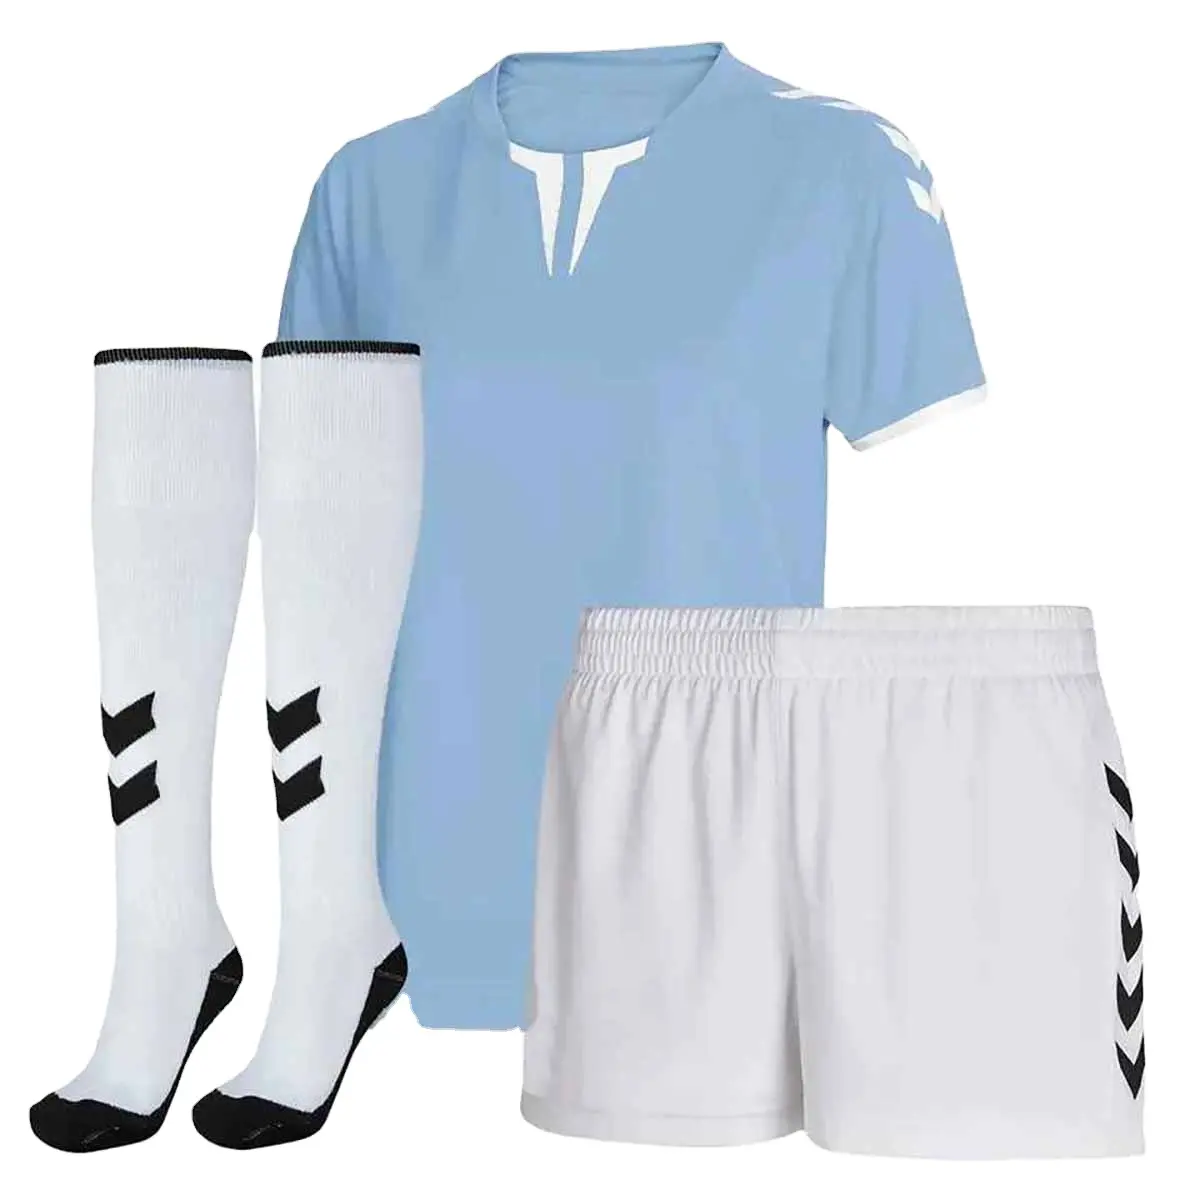 Fußball Trikot Sets Sublimation Fußball tragen für Männer Praxis Fußball Trikots Benutzer definierte Fußball Sportswear Fußball Team Uniform